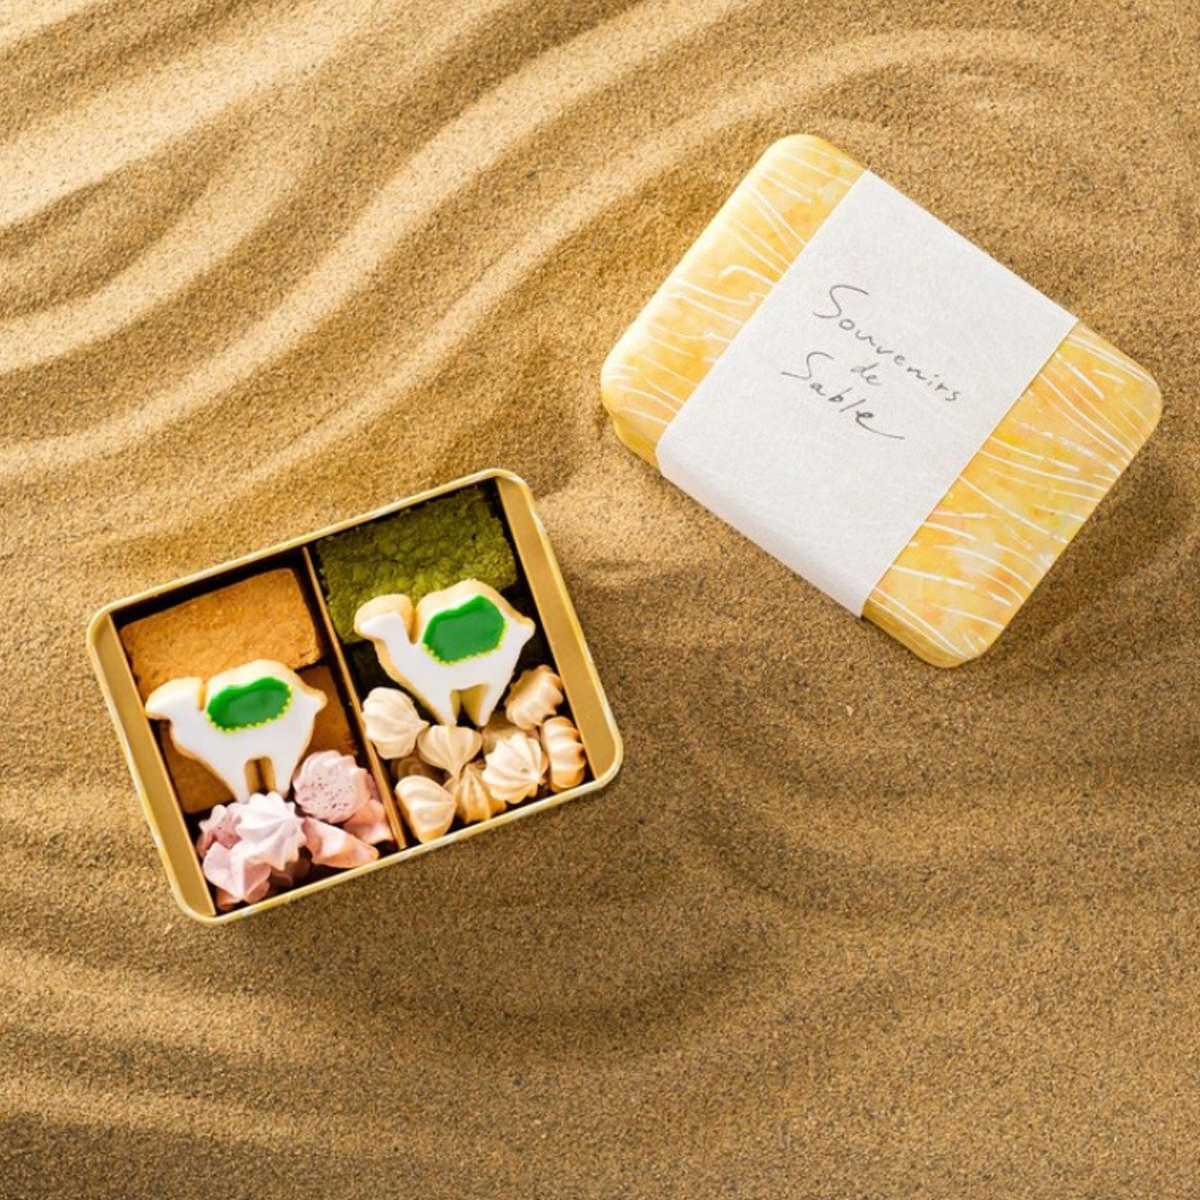 「トリの菓子 Souvenirs de sable サブレ缶」は、鳥取県の良質な素材を使用し、工房で丁寧に焼き上げたサブレ缶です。鳥取砂丘をテーマにし、缶に帯掛けしたラッピングには因州和紙を使用しています。高級感のある人気商品でプレゼント、ギフト、おみやげなど様々なシーンでお使いいただけます。 ＜バニラサブレ＞ほろほろとした食感とバターの風味が織りなす、優しい甘さのハーモニー。 ＜抹茶サブレ＞鳥取県産最高級抹茶の濃厚な旨味。大人の味覚にふさわしい逸品です。 ＜らくだのアイシングクッキー＞職人の手作業で丁寧に作られています。 ＜イチゴのメレンゲ＞新鮮ないちごの甘酸っぱさが広がる、微笑むような優しい味わい。 ＜ほうじ茶のメレンゲ＞軽やかでふんわりとした食感に、鳥取県産の上質なほうじ茶の風味が溶け込みました。【名称】焼菓子【数量・内容】バニラサブレ×6、抹茶サブレ×6、らくだのアイシングクッキー×2、イチゴのメレンゲ×8、ほうじ茶のメレンゲ×8【賞味期間】製造日から20日【原材料】バター(国内製造)、粉糖、コーンスターチ、米粉、加糖卵黄(卵黄、砂糖)、抹茶、塩、カスタードミックス(砂糖、脱脂粉乳、全脂粉乳、植物油脂、グルコースシロップ、乳蛋白/増粘(アルギン酸ンNa)、香料、着色料(カロチン)、バター、グラニュー糖、アーモンドパウダー、卵黄、薄力粉、卵白(国内製造)、レモン、ほうじ茶、いちごパウダー(一部に卵を含む)【仕様】掲載商品には、アレルギーの原因といわれる原材料を含んでいる場合がございます。 くわしくはお問い合わせフォームにてご連絡ください。類似商品はこちら銀座千疋屋 銀座焼きショコラサブレ 4種 詰合4,320円クッキー お花のリンツァーアウゲン 3缶セット9,001円クッキー お花のリンツァーアウゲン 2缶セット6,551円torinos 焼き菓子 7種詰め合わせ 洋菓4,640円torinos レモンケーキと焼き菓子 8種詰6,140円ア・ラ・カンパーニュ 焼菓子詰合せ 13個入 3,888円クッキー缶セット ウサギ花 丸缶2個角缶1個セ3,800円クッキー缶セット ウサギ花 丸缶3個角缶1個セ5,300円クッキー缶セット ウサギ赤テント 丸缶2個角缶3,800円新着商品はこちら2024/5/16かね七 富山湾産白えびピクルス詰合せ※北海道・4,062円2024/5/16岩手 けせんの海※北海道・沖縄・離島 お届け不5,346円2024/5/16徳島クルス※北海道・沖縄・離島 お届け不可5,346円再販商品はこちら2024/5/16富錦樹 フージンツリー 人気メニュー食べ比べセ10,900円2024/5/16石川のひとくち玄米チップス サクザク 25g×3,368円2024/5/16屋久島そだちのフルーツゼリー シャリプニ 853,719円